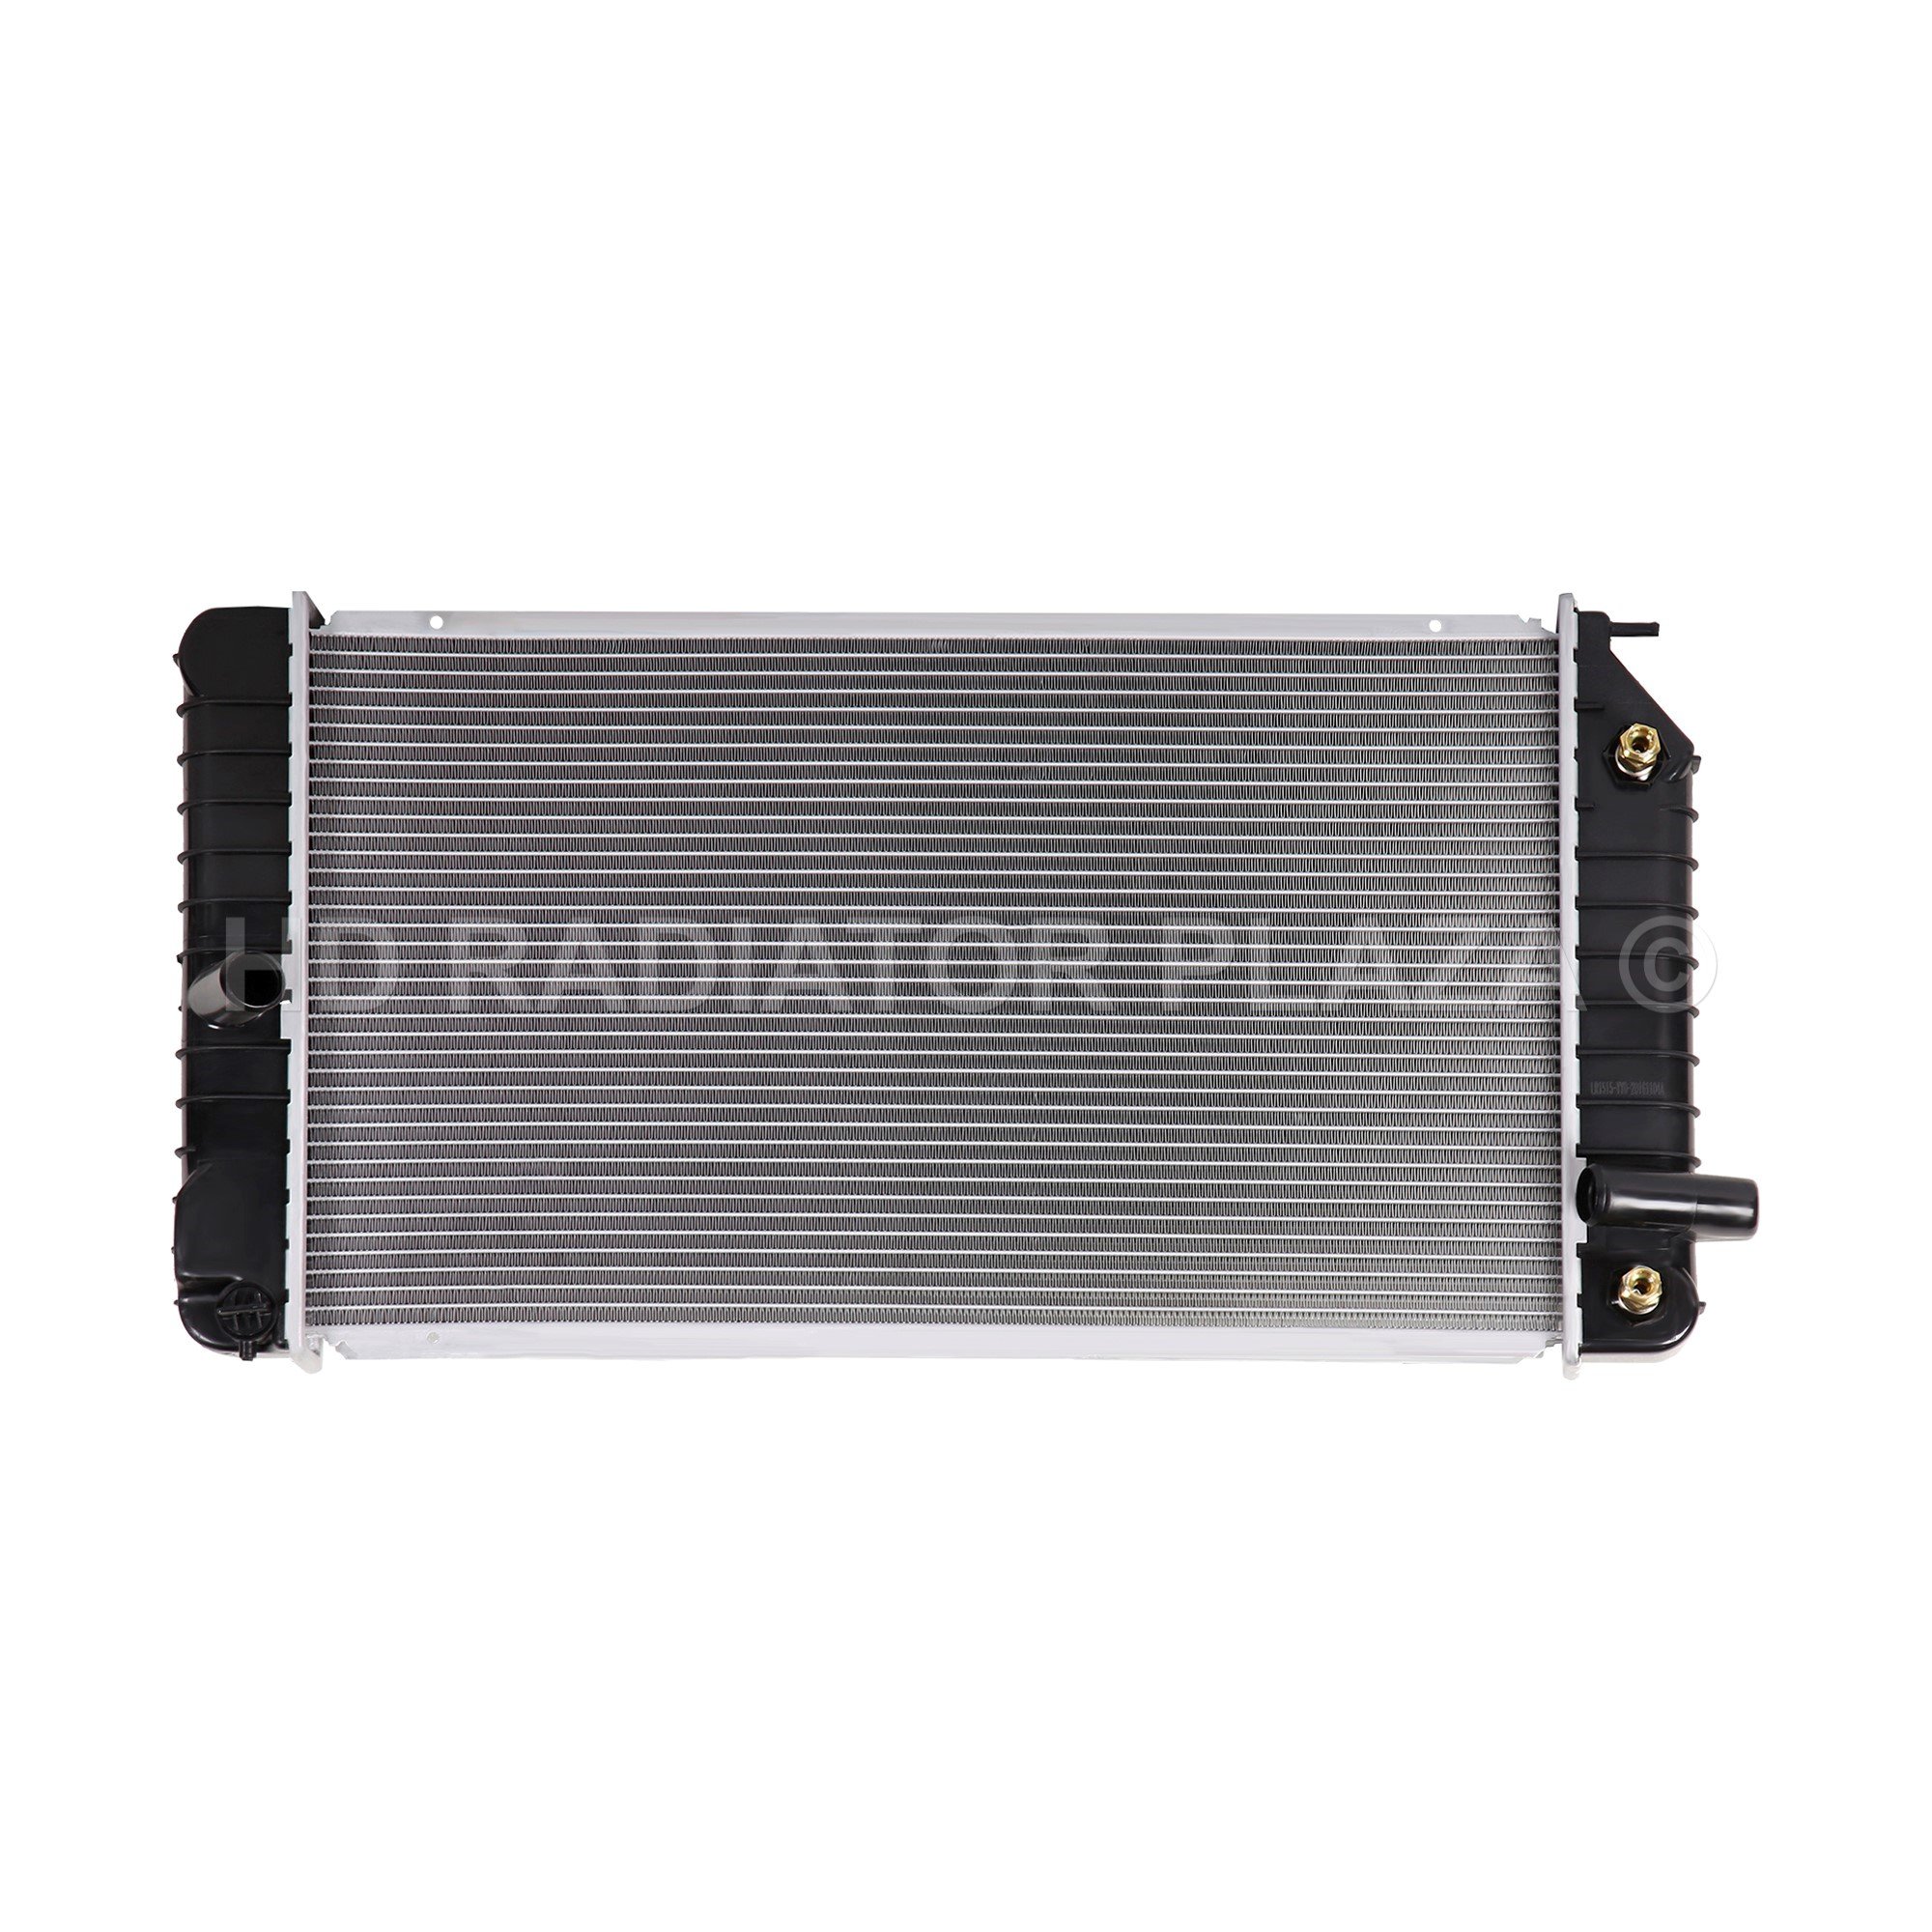 Radiator for 94-98 SKYLARK / ACHIEVA / CORSICA / PONTIAC GRAND